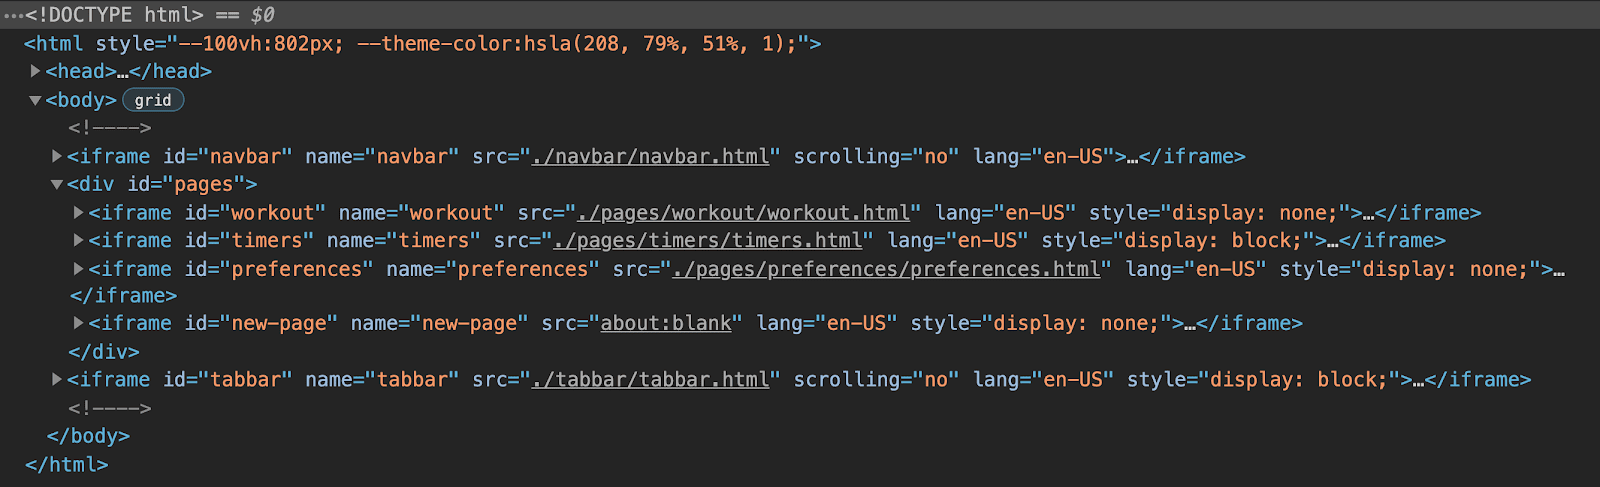 アプリの HTML 構造を示す Chrome DevTools ビュー。6 つの iframe（ナビゲーション バー用、タブバー用、アプリのページごとにグループ化された 3 つの iframe）で構成されており、動的ページの最終的なプレースホルダ iframe が表示されている。